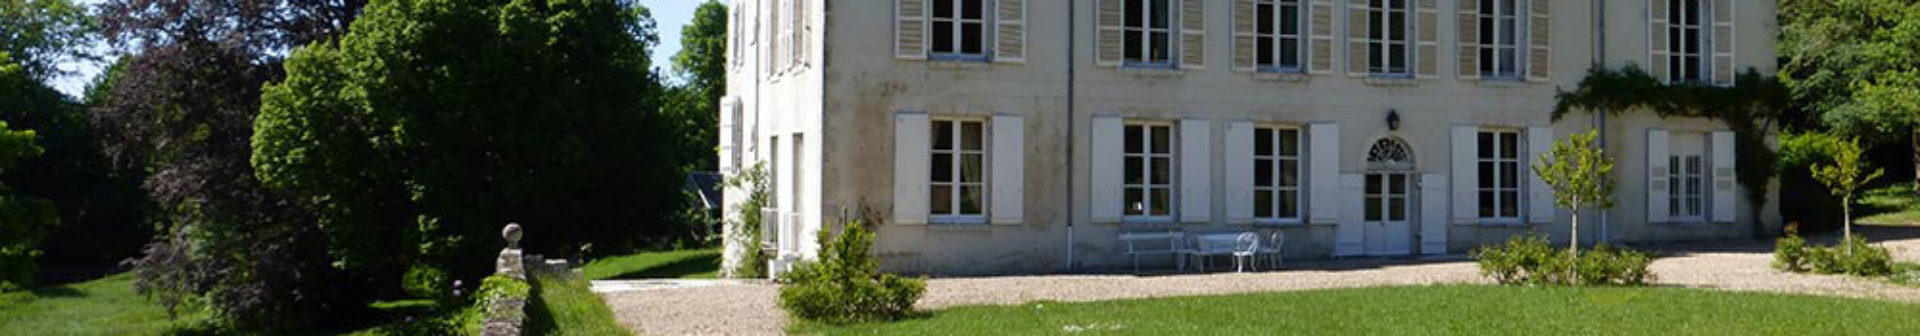 Château de Beaumont